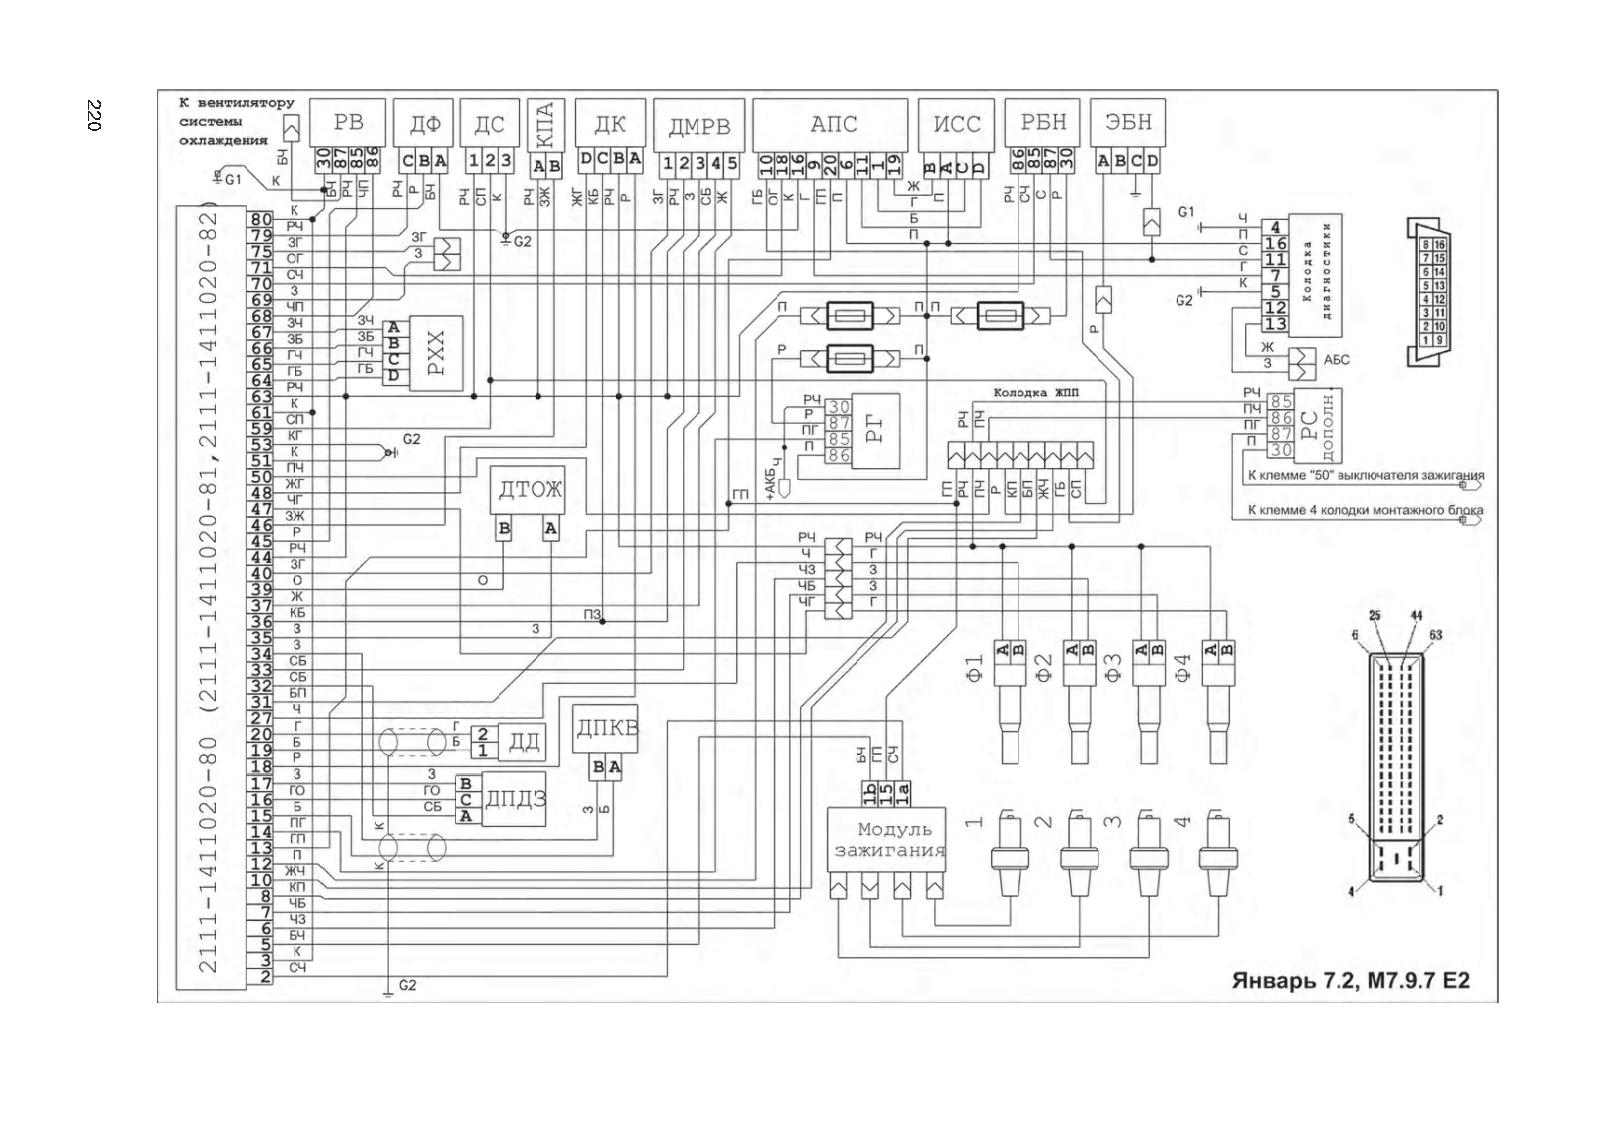 Схема электрическая блока управления Микас 7.2